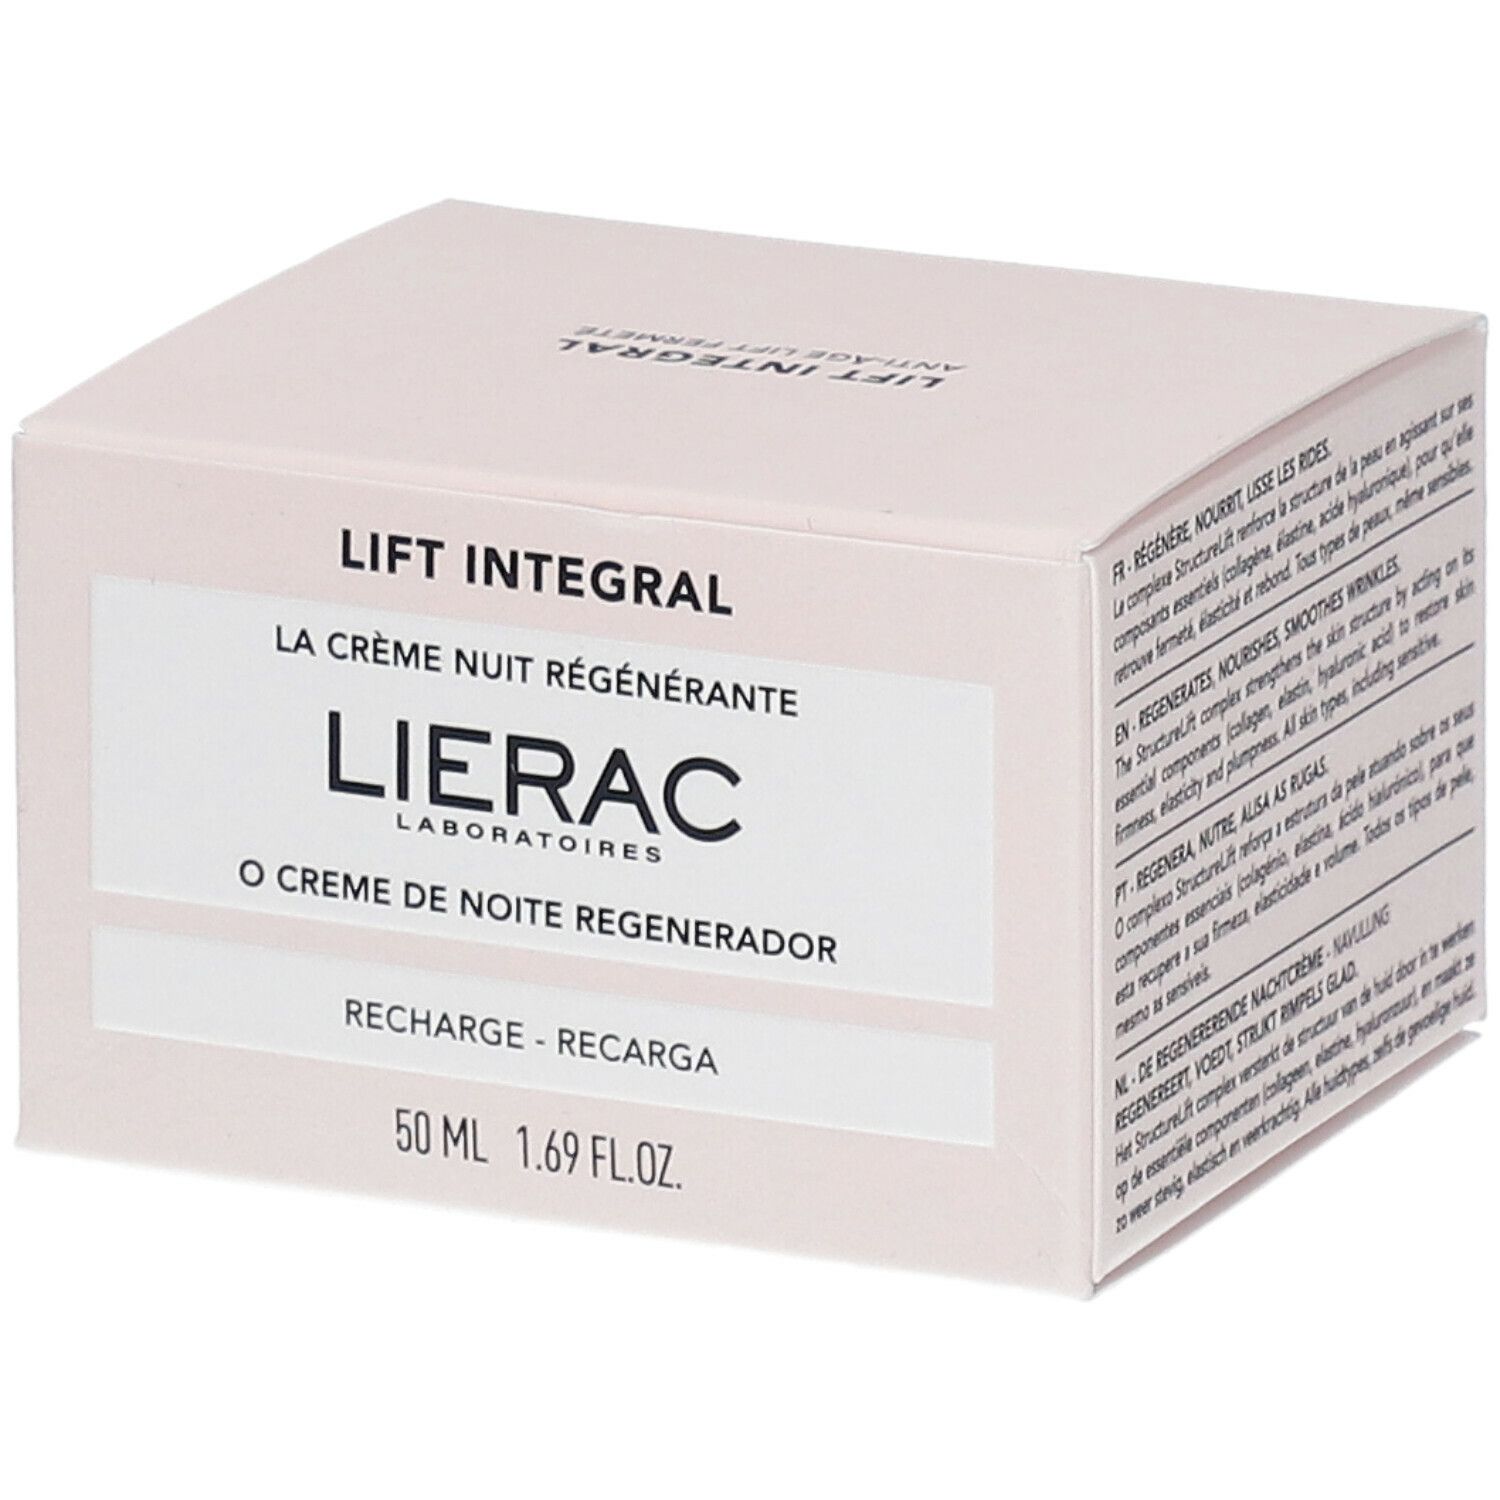 Lierac Lift Integral La crème nuit régénérante recharge